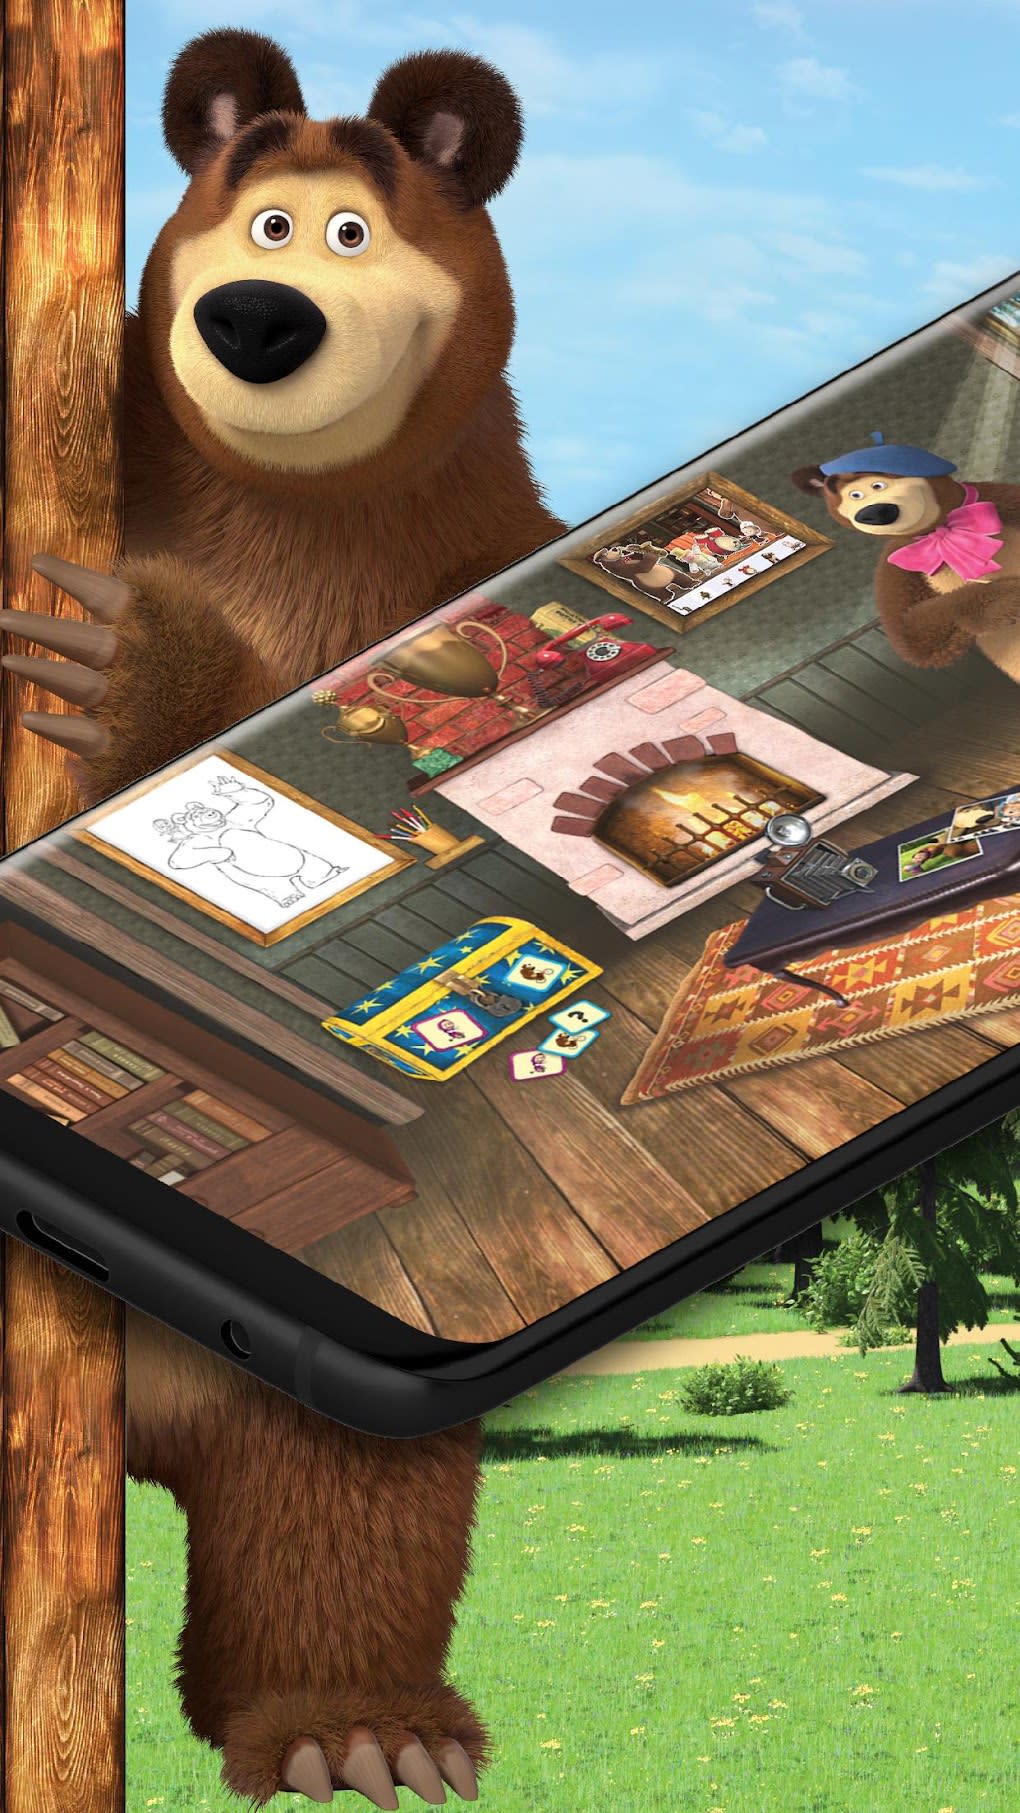 Masha e o Urso – Apps no Google Play